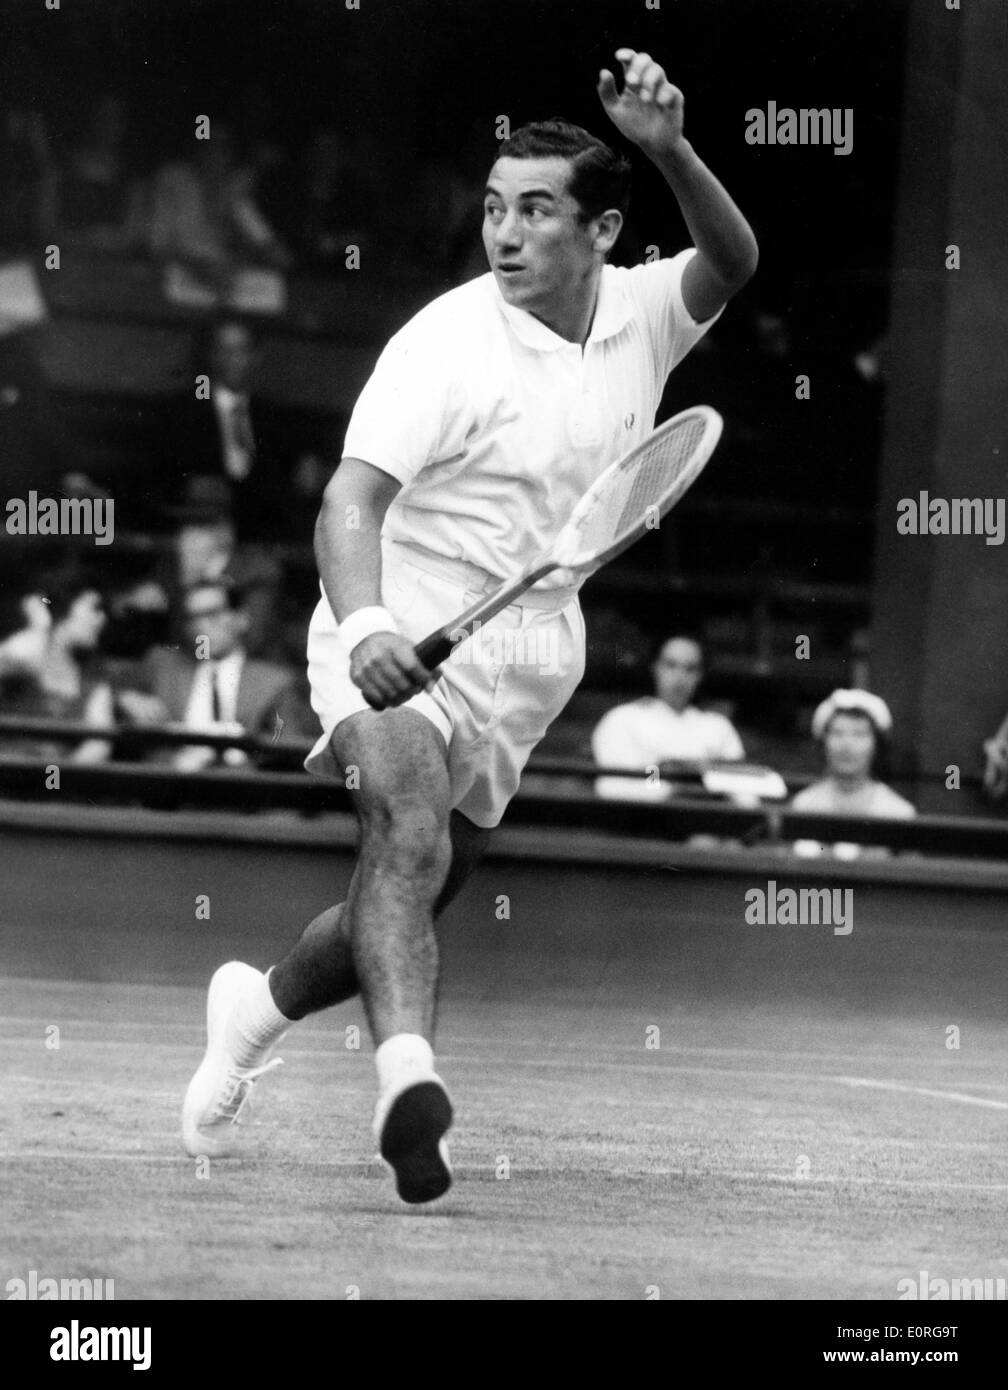 Tennis player Luis Ayala at Wimbledon Stock Photo